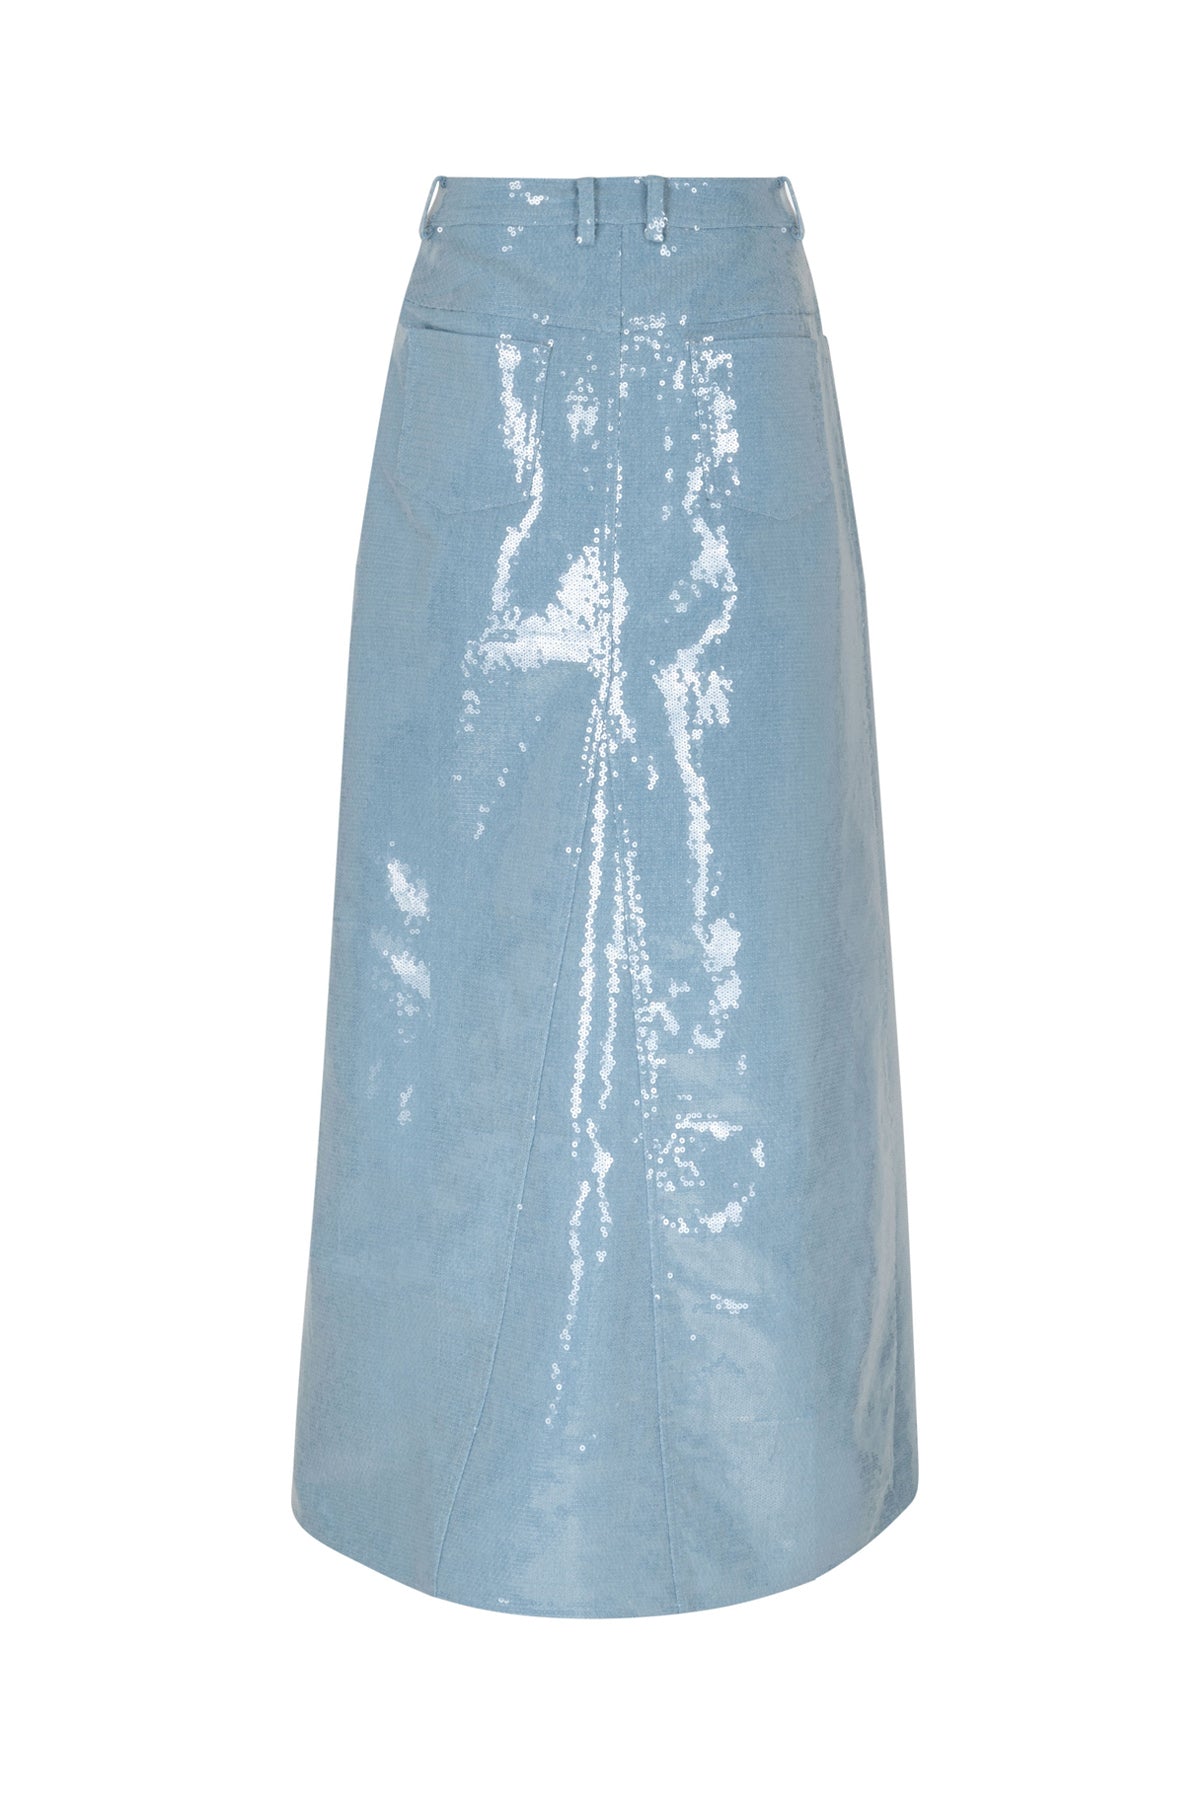 CRAS Nellie Skirt Skirt 7009 Light Blue